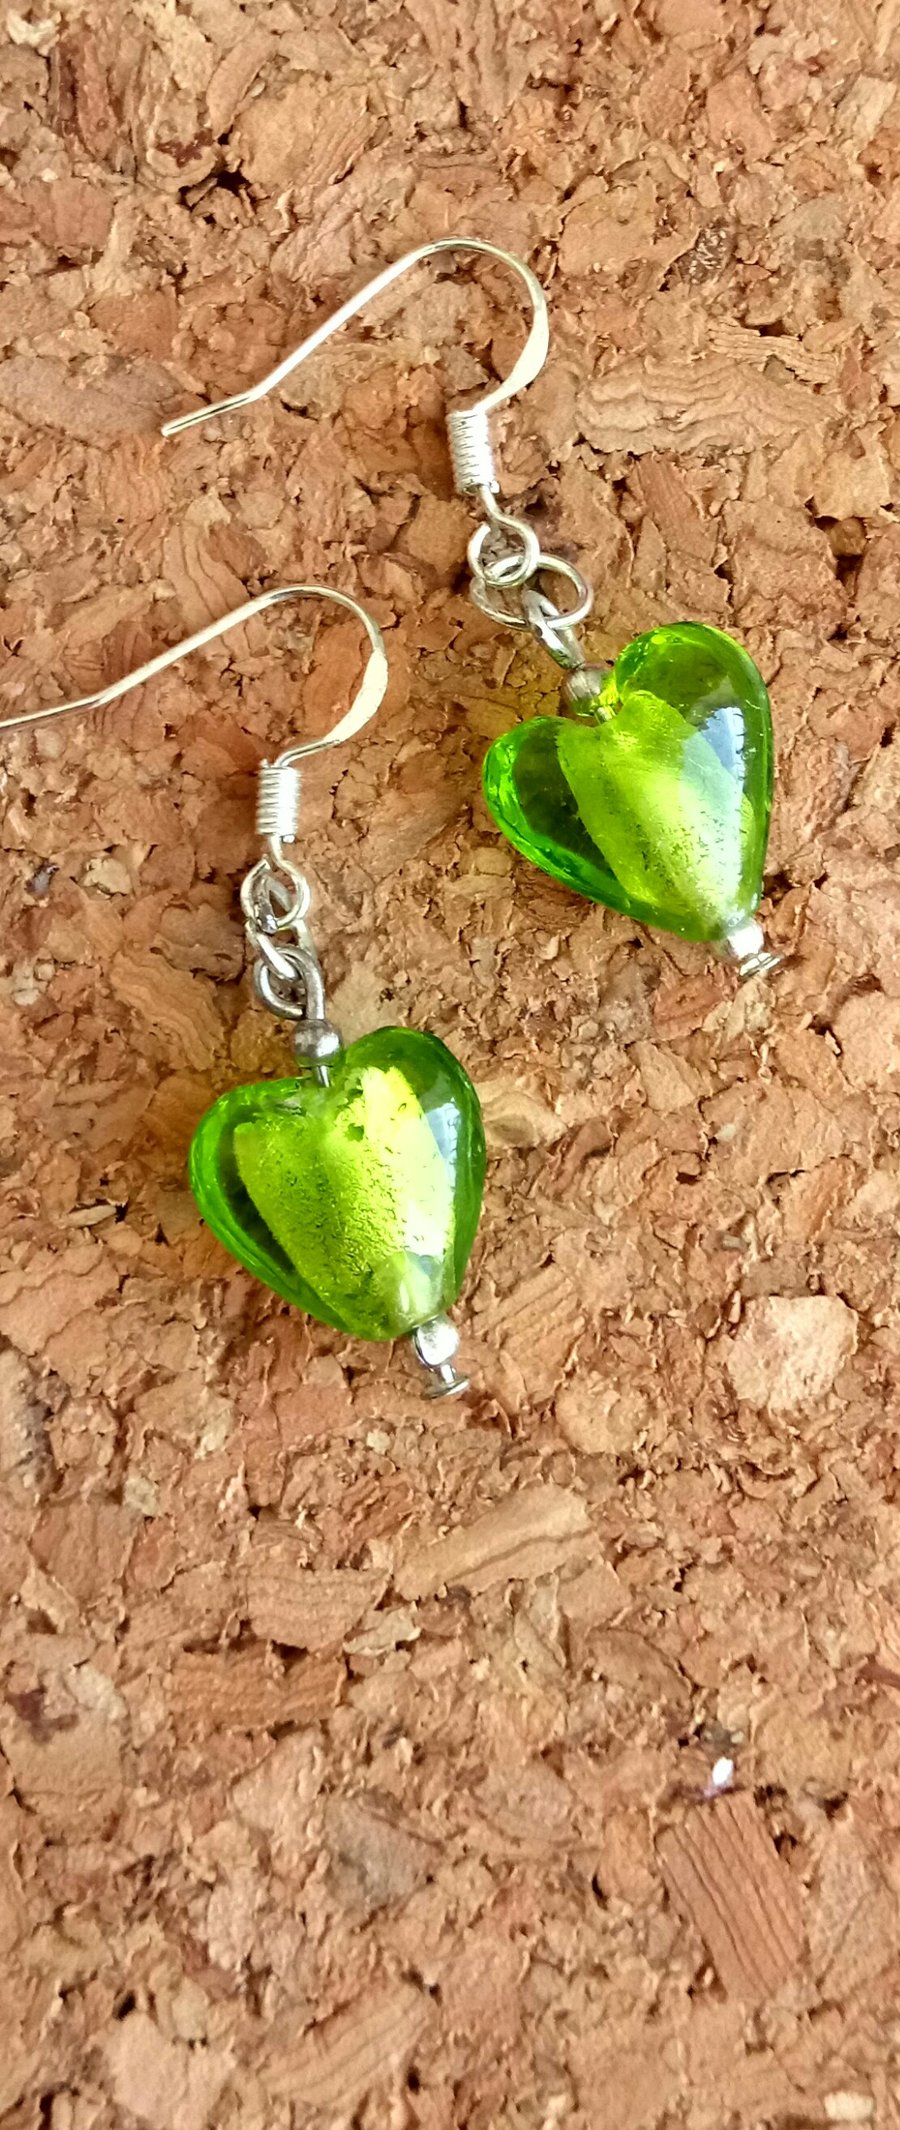 Glass Heart Earrings